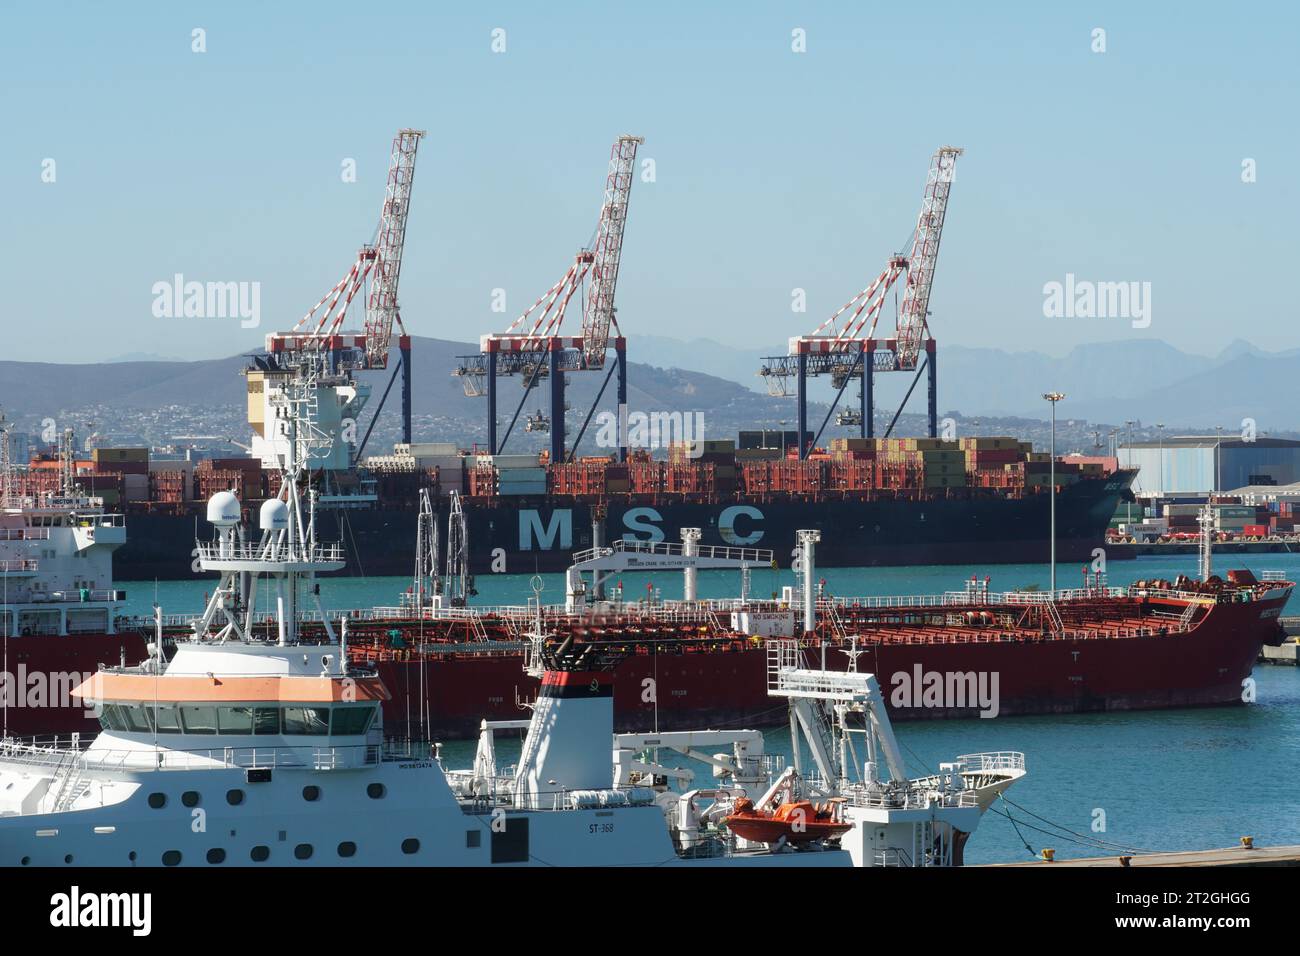 Nave portacontainer della compagnia MSC, nave cisterna arancione e nave scientifica bianca ormeggiata nel porto di città del Capo. Foto Stock